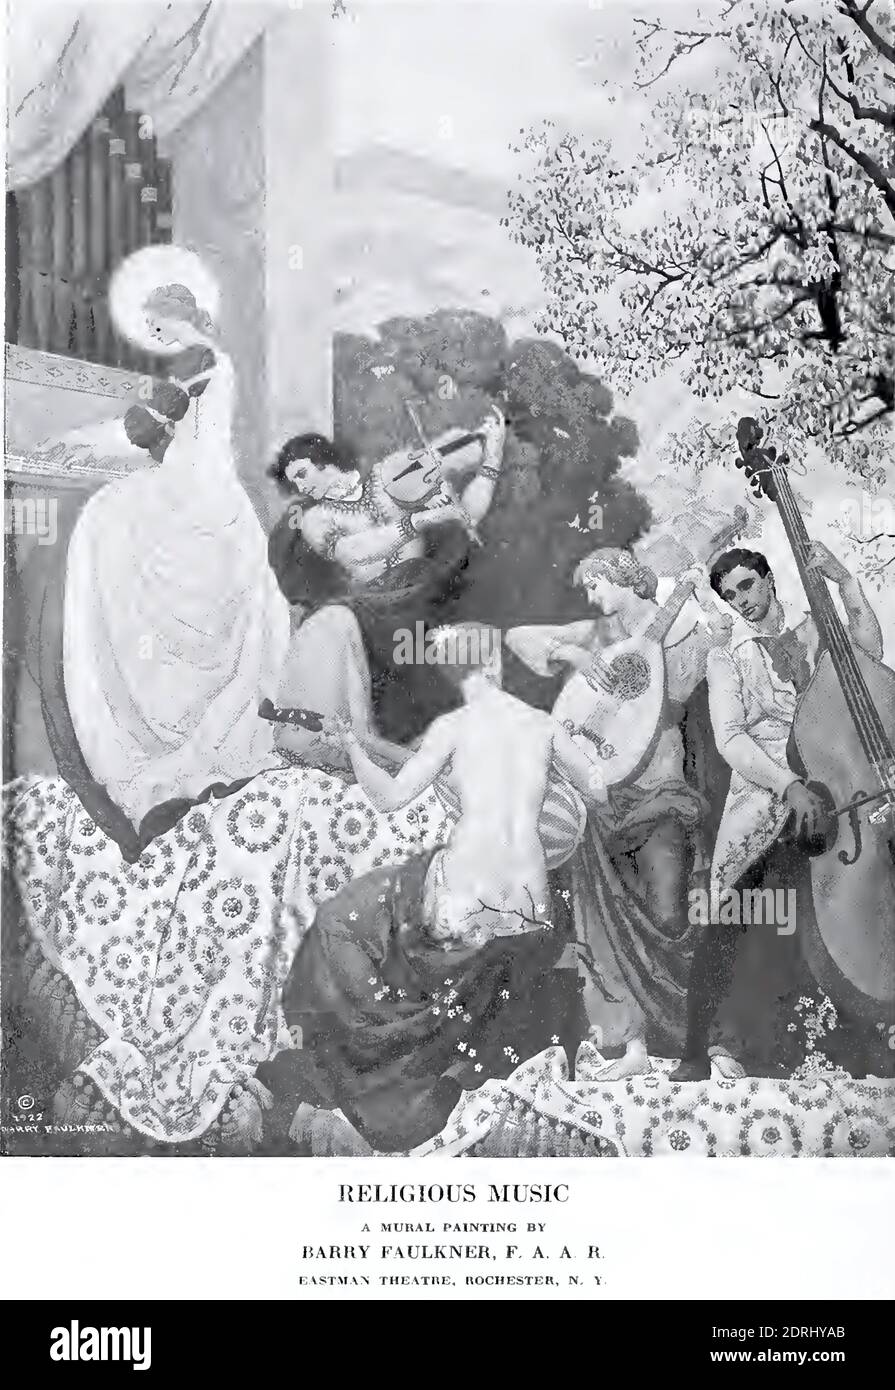 Fotografia d'epoca del murale di Barry Faulkner all'Eastman Theatre di Rochester, New York completata nel 1922. Foto Stock